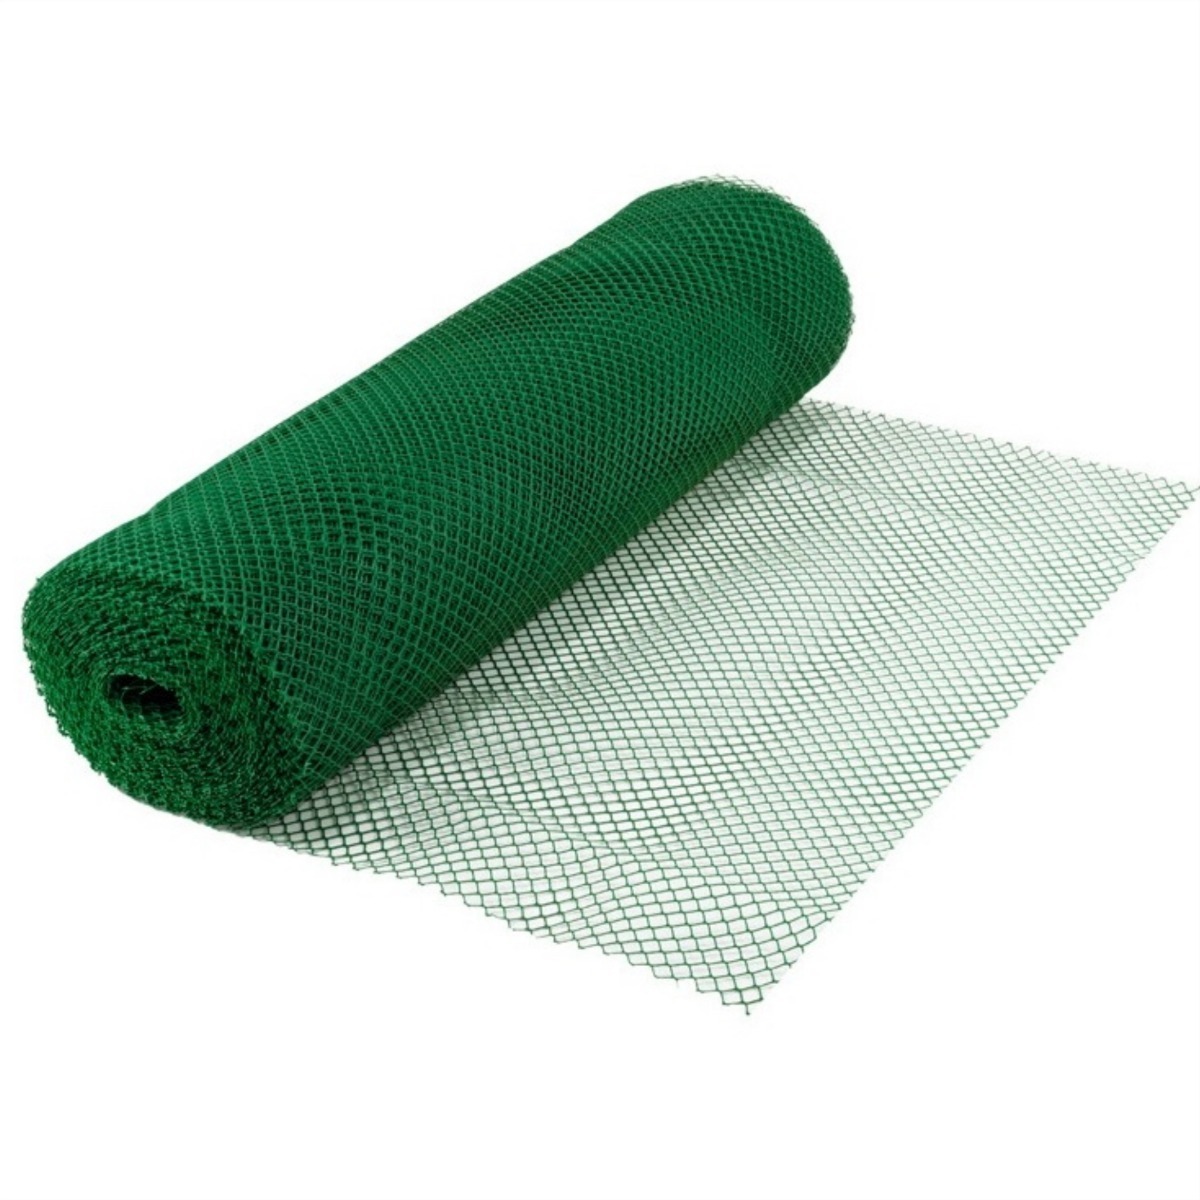 Malla Cerco Tejido Verde Plástico 1.5m Alto - Precio X Metro - $ 155,00